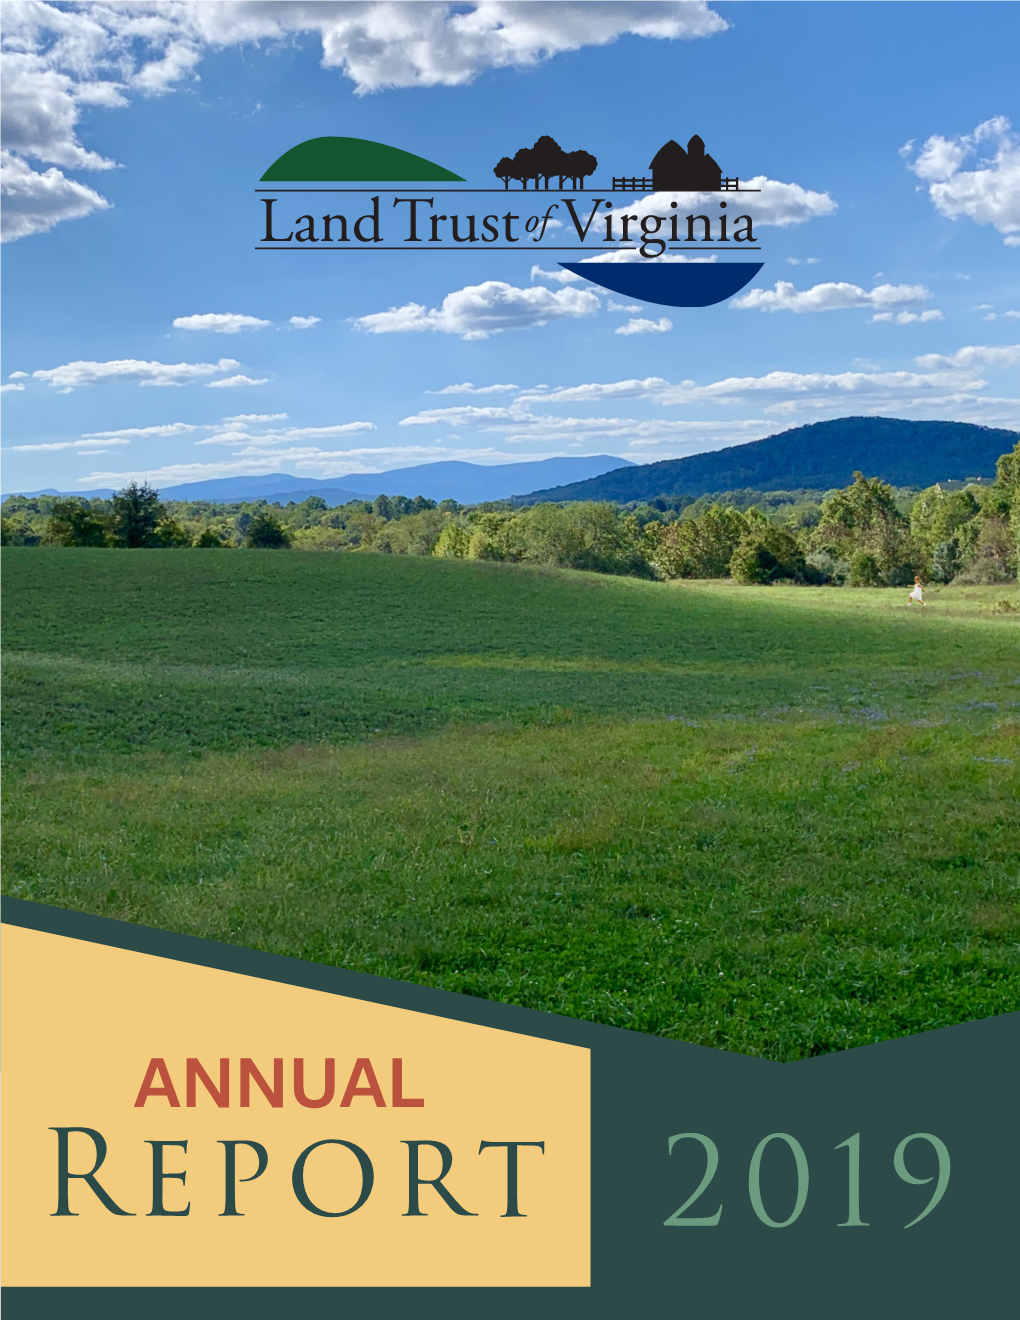 ANNUAL Report 2019 Land Trust of Virginia 2019 Annual Report